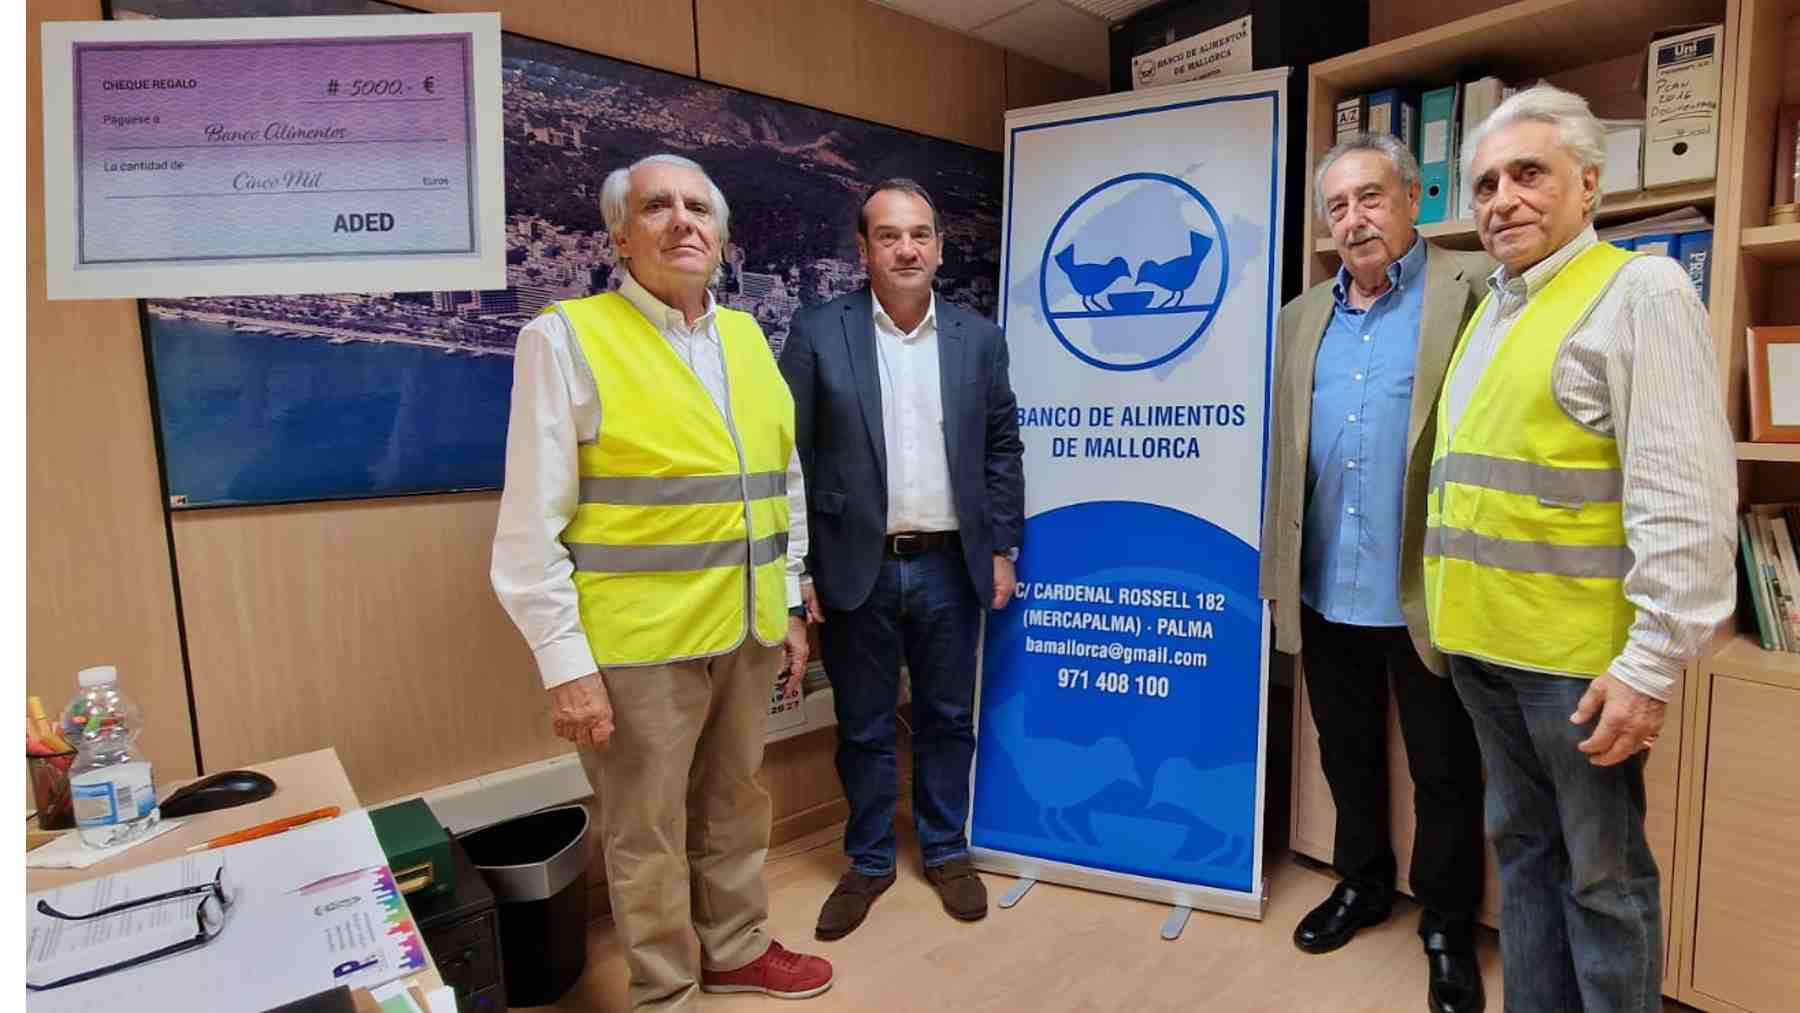 ADED entrega al Banco de Alimentos de Mallorca una donación de 5.000 euros.